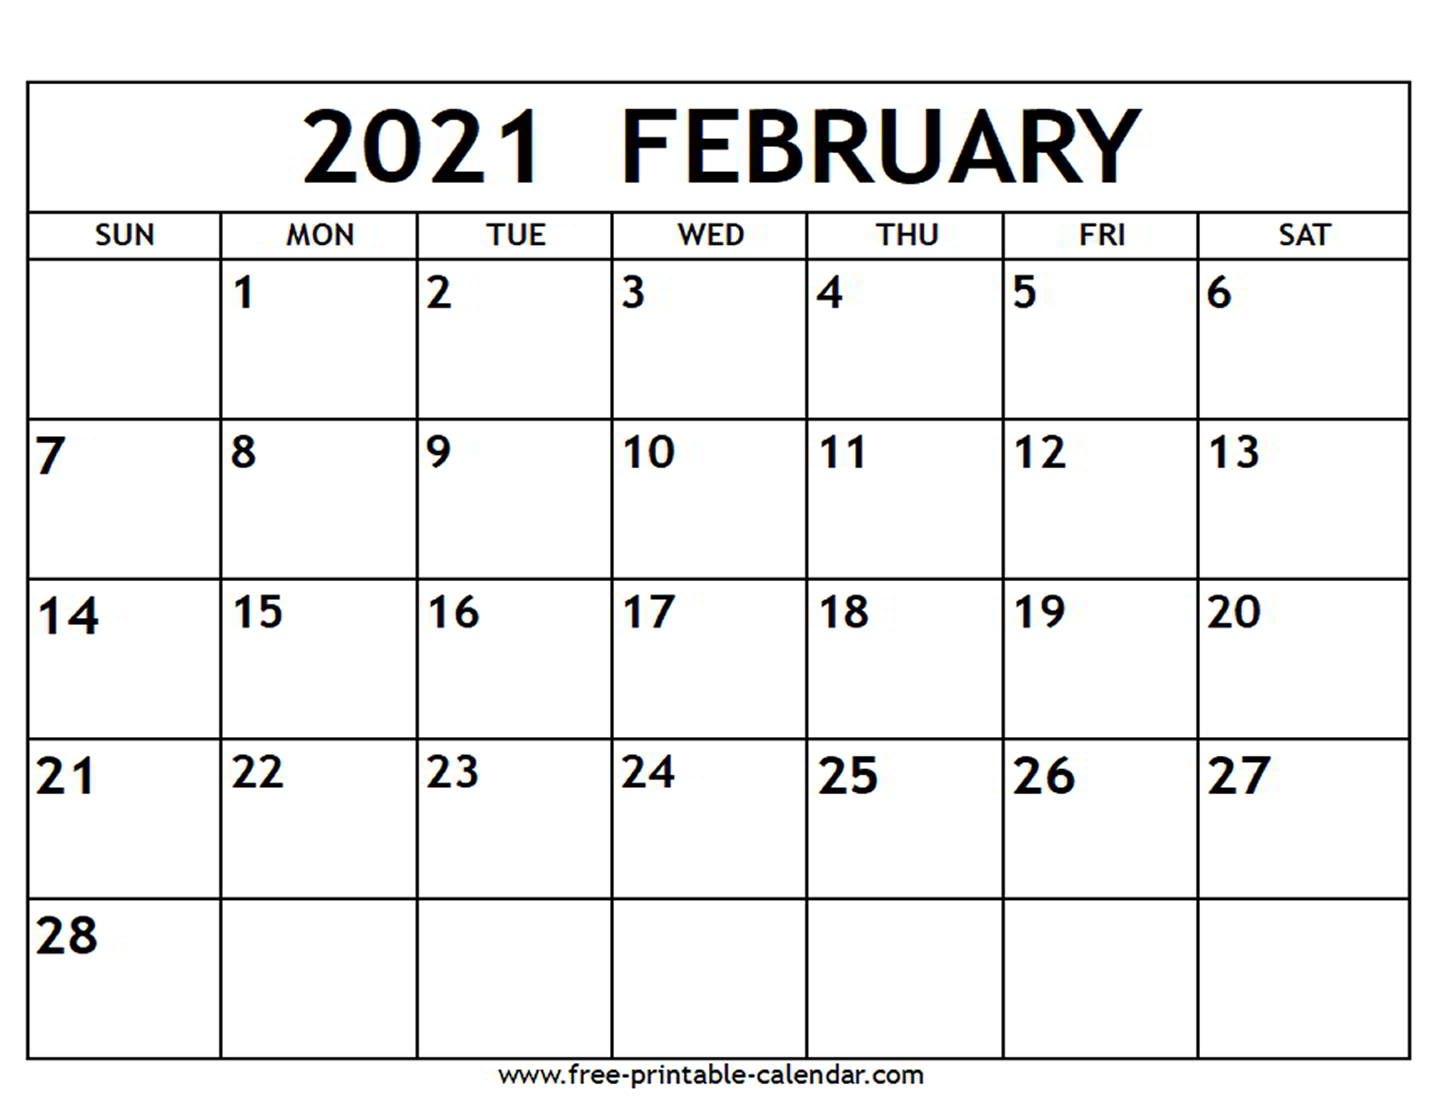 february 2021 calendar free printable calendar